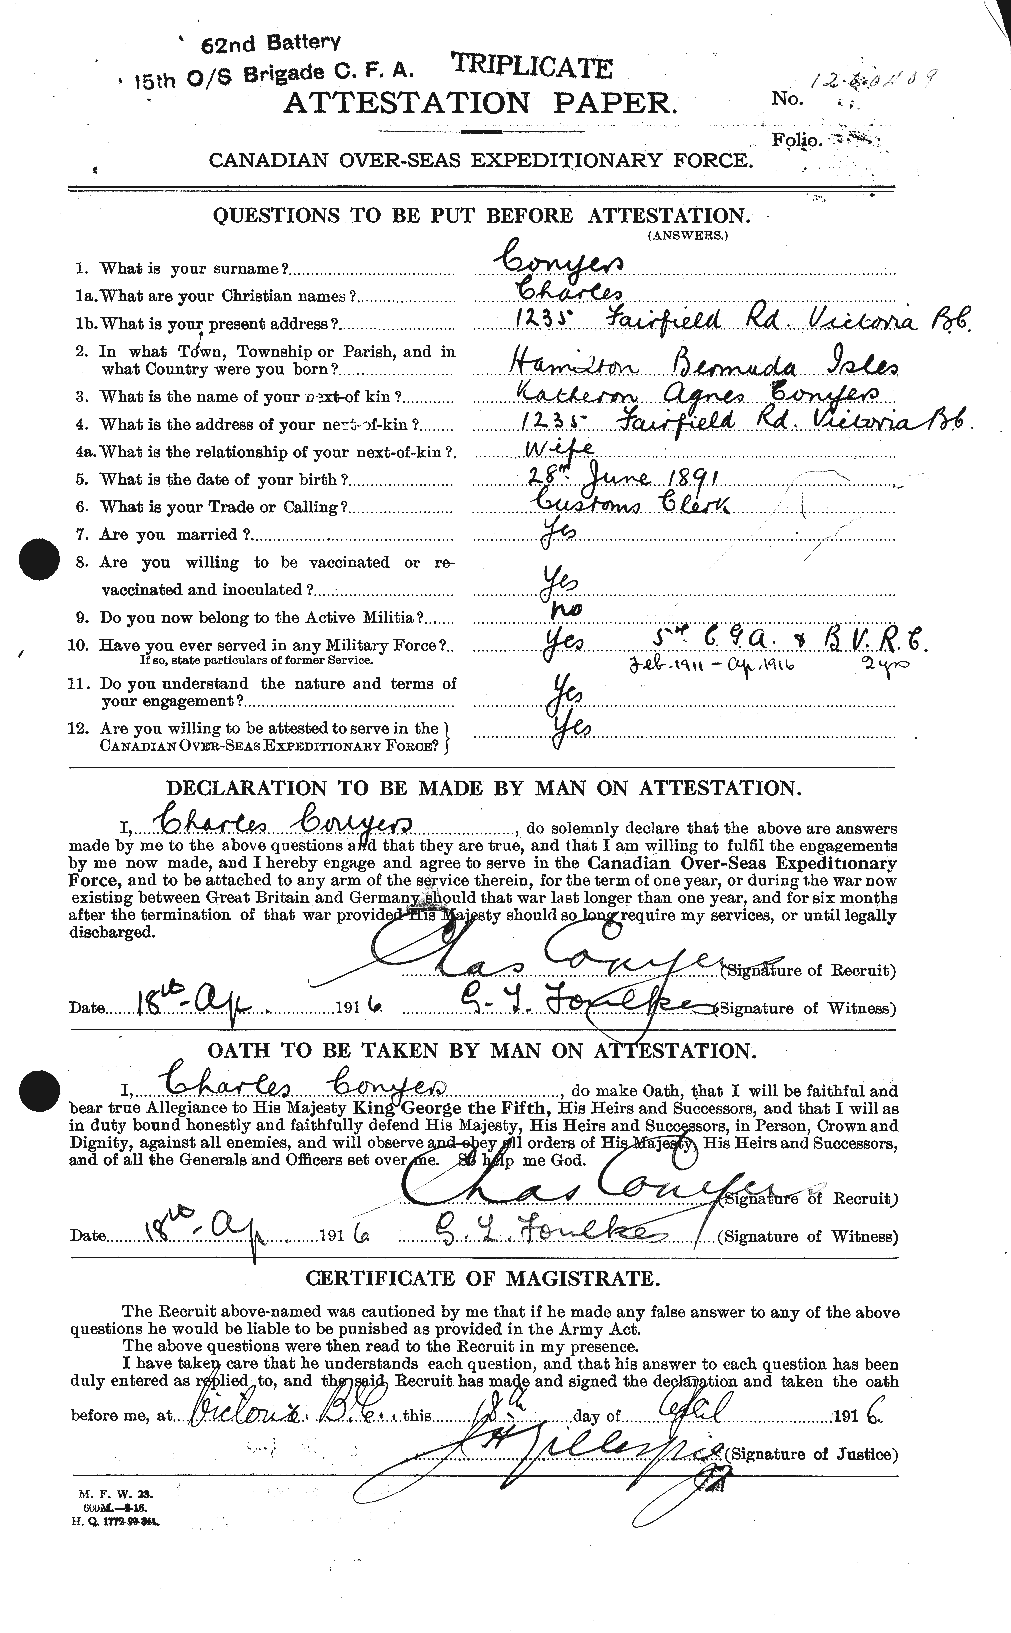 Dossiers du Personnel de la Première Guerre mondiale - CEC 072879a